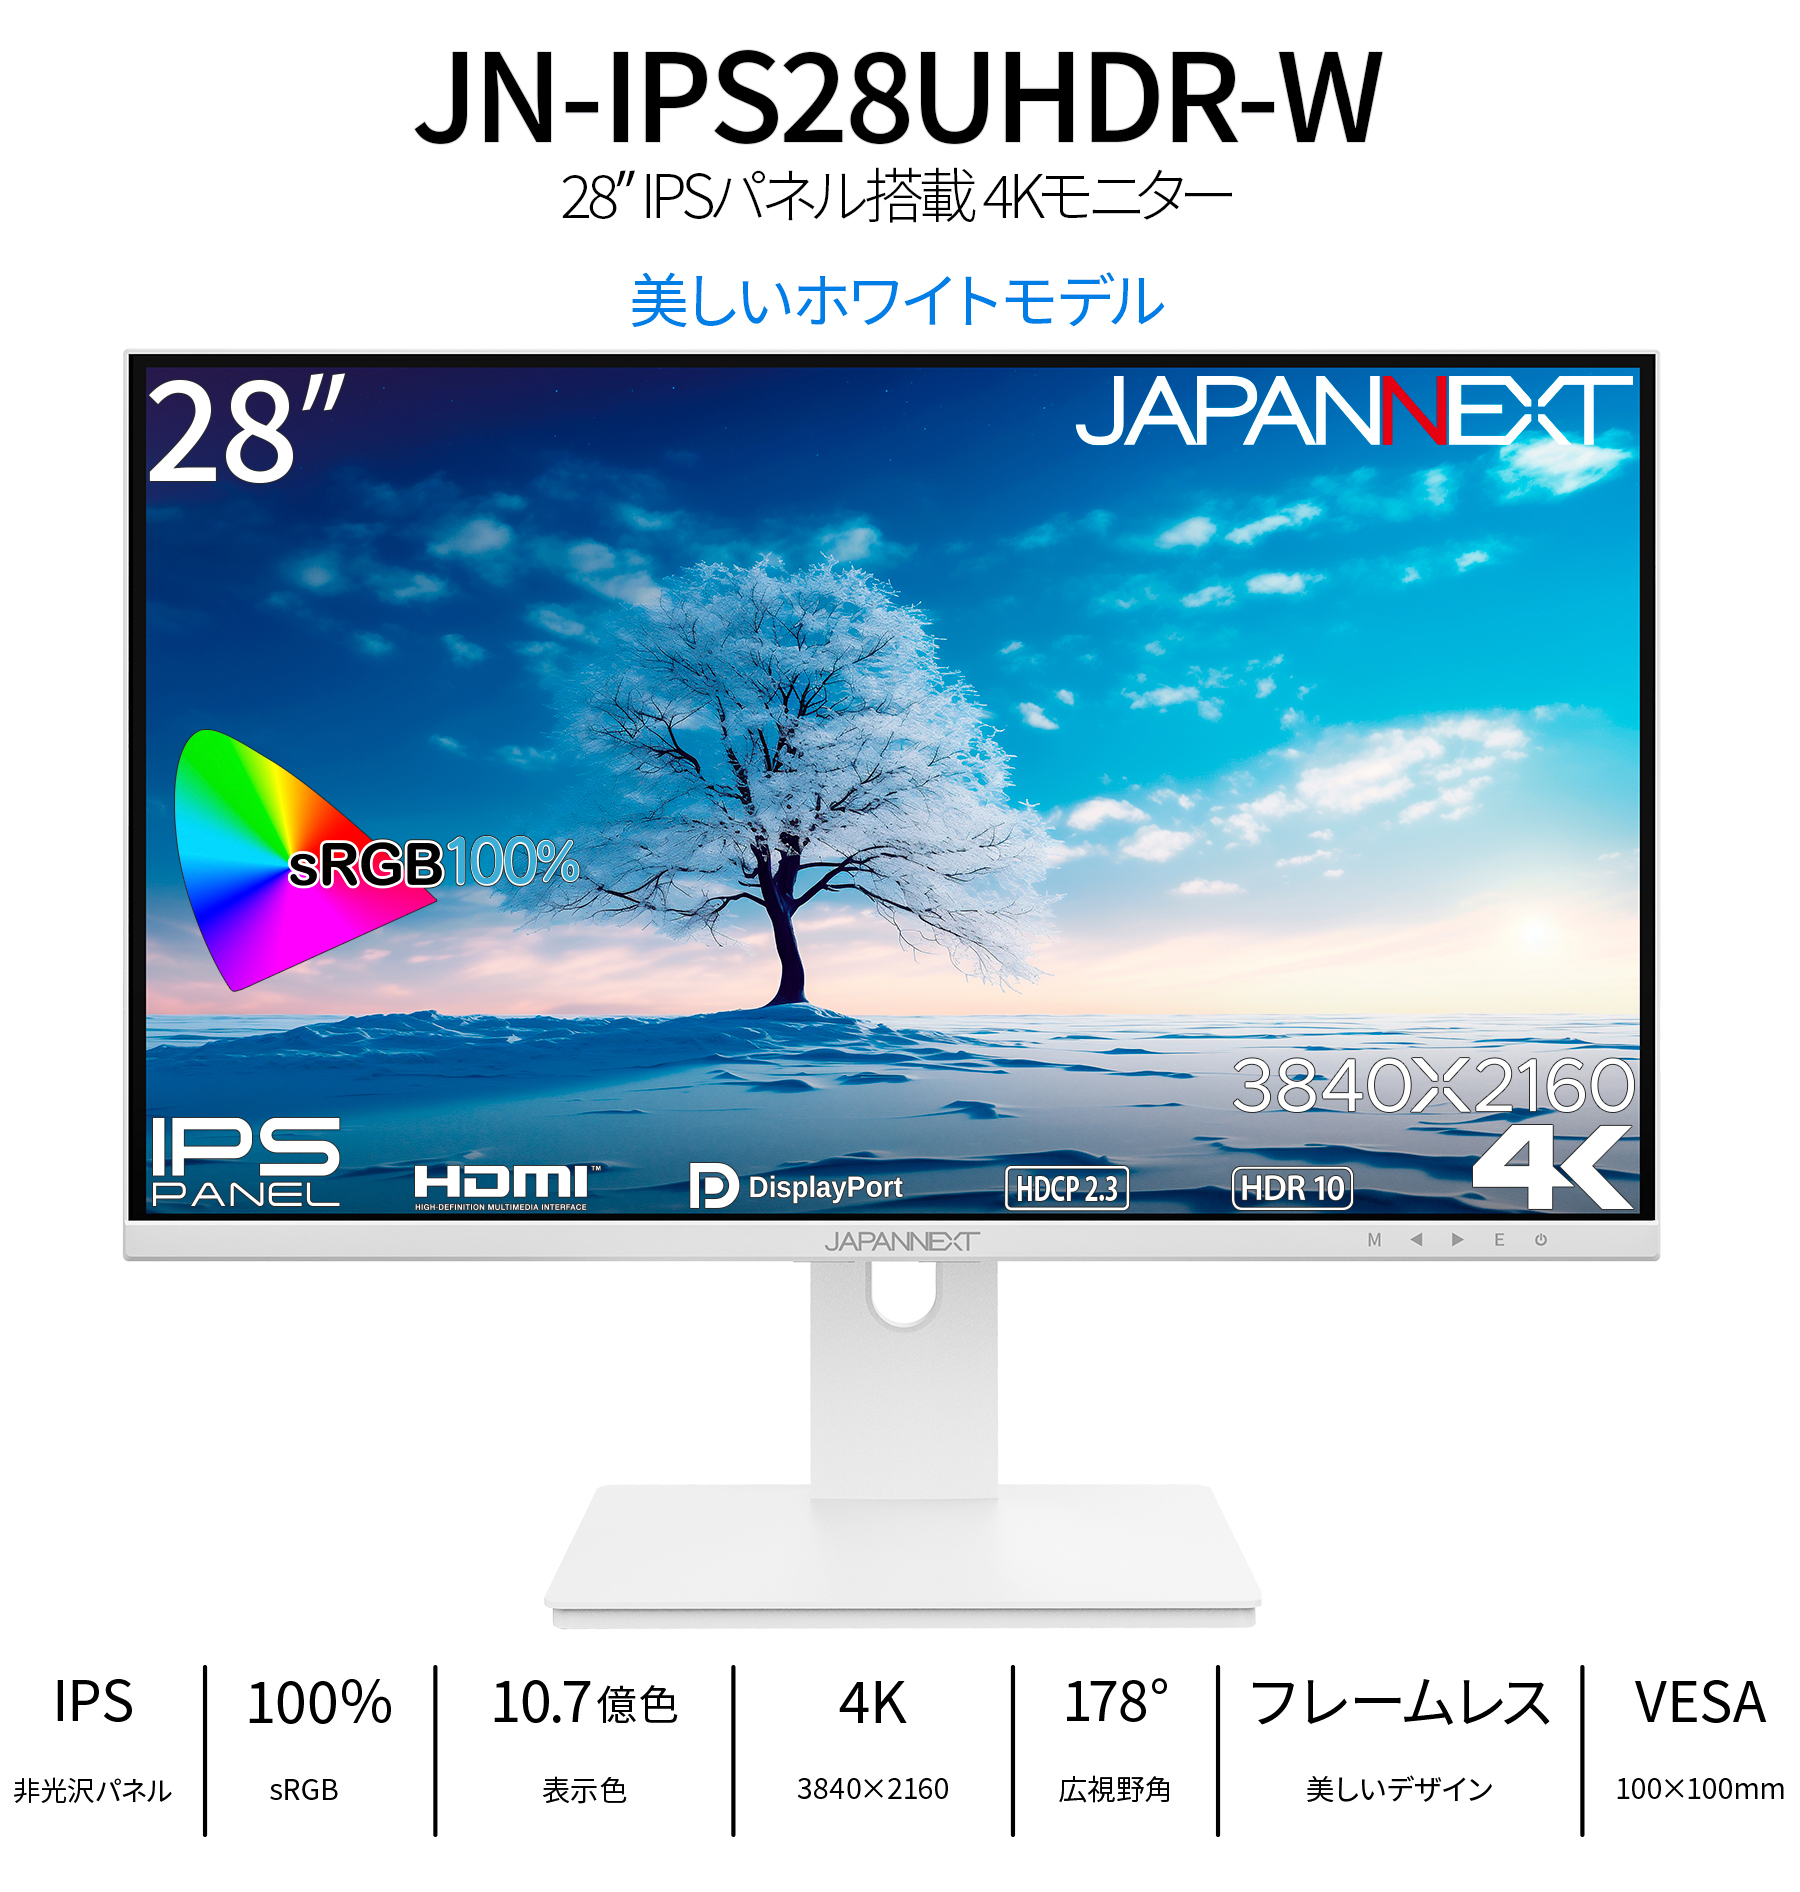 JAPANNEXT 28インチ IPSパネル搭載 4K(3840x2160)解像度 液晶モニター JN-IPS28UHDR-W HDMI DP HDR  sRGB100% ホワイトカラー採用 ジャパンネクスト